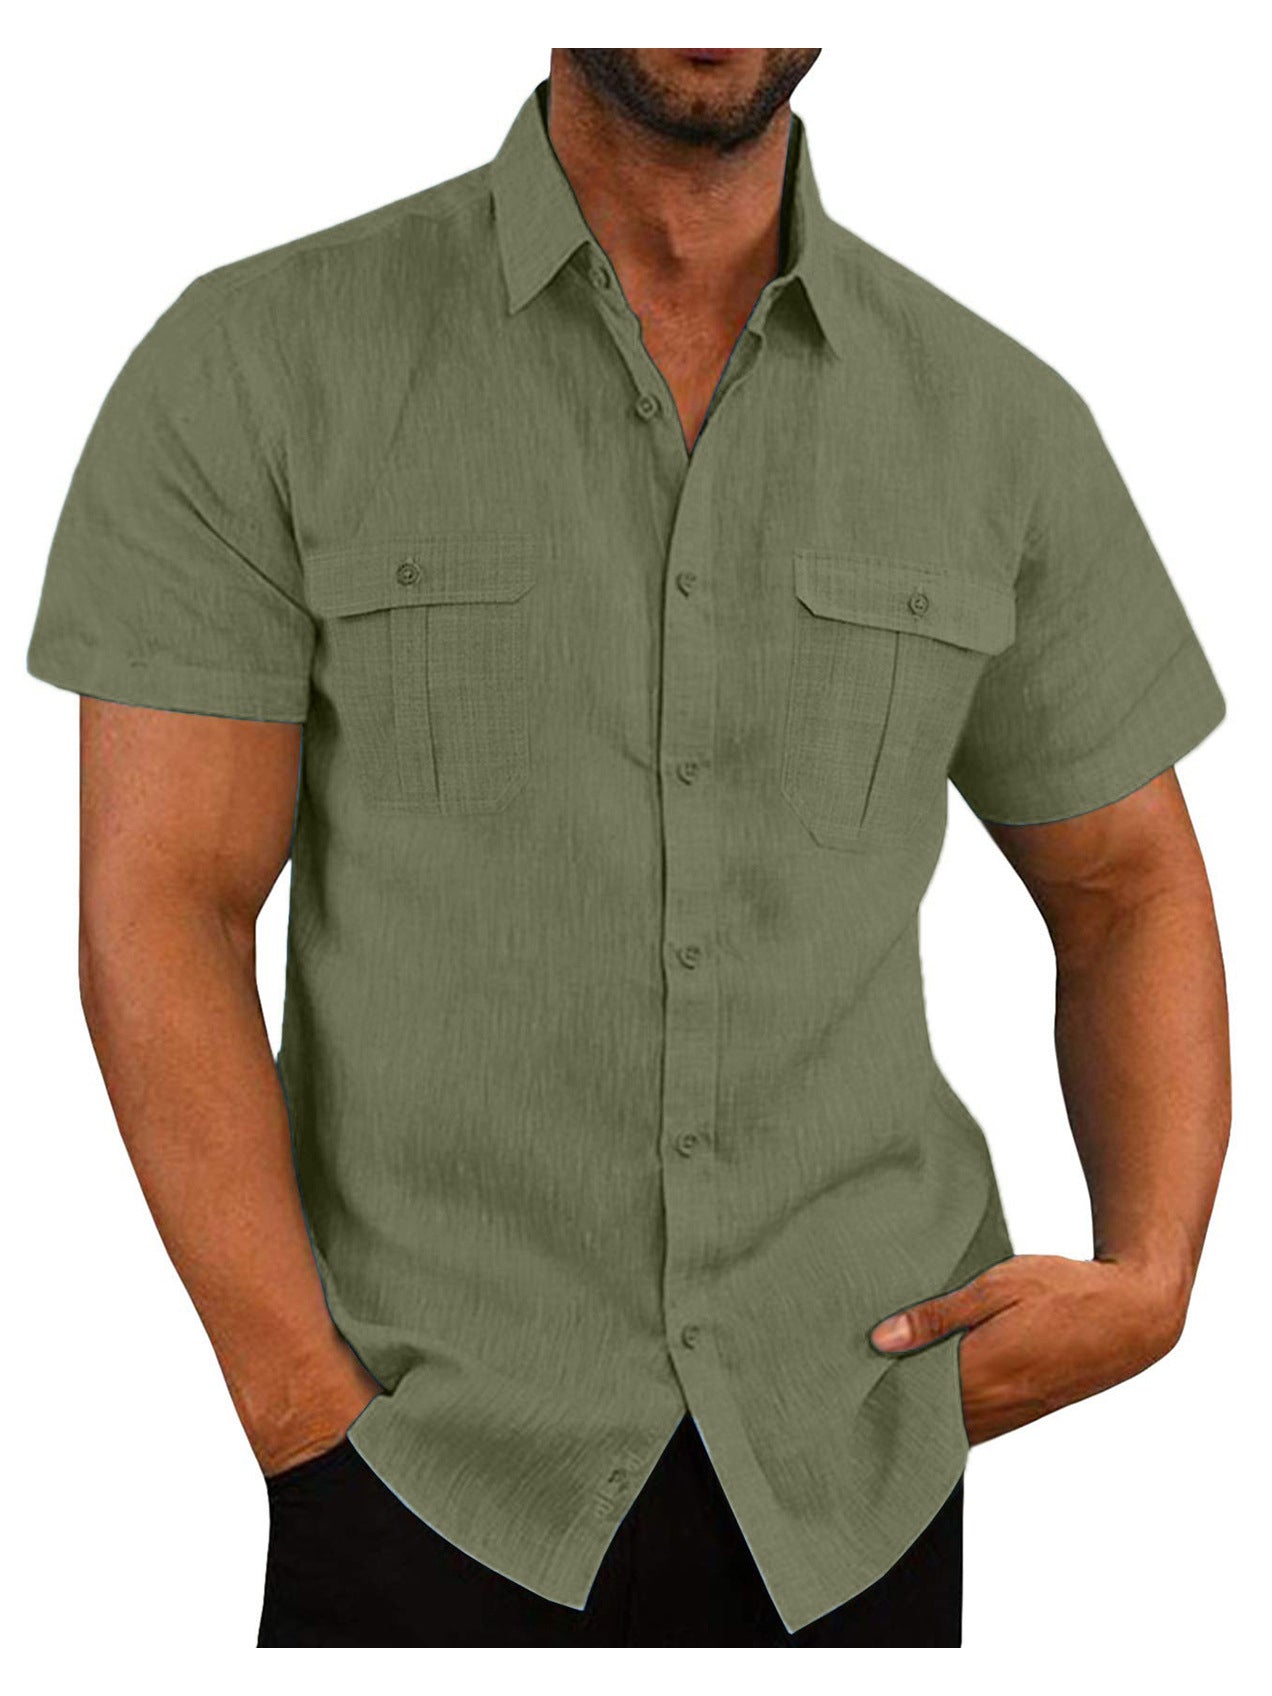 Men's Vacation Casual Shirt